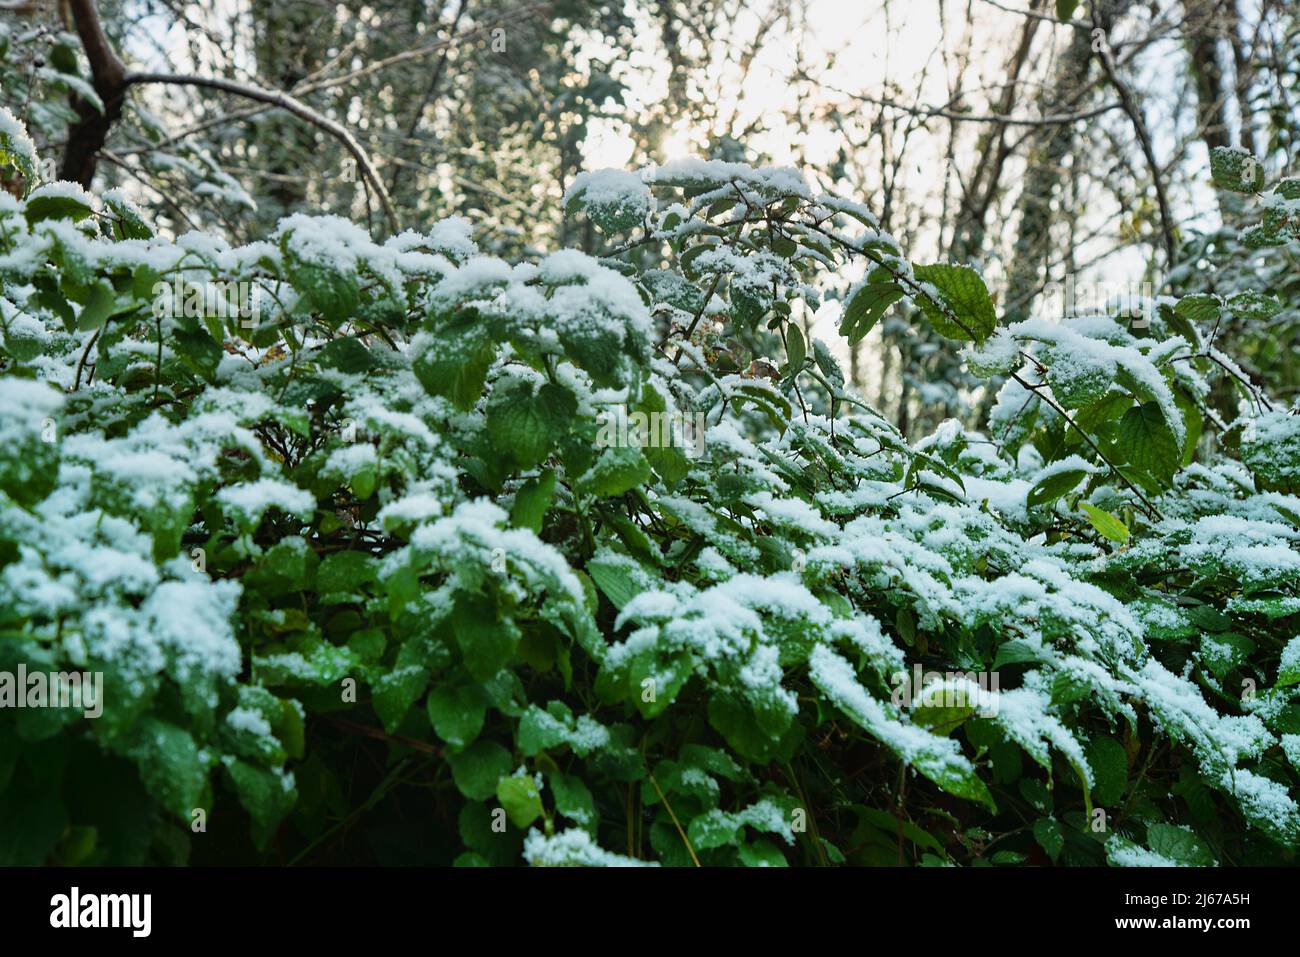 Früher Schnee. Herbstdickichte aus Brombeeren, Clematis und anderen Lianen sind mit Schnee bedeckt, der für den Süden unerwartet ist. Hainbuche-Wald Stockfoto